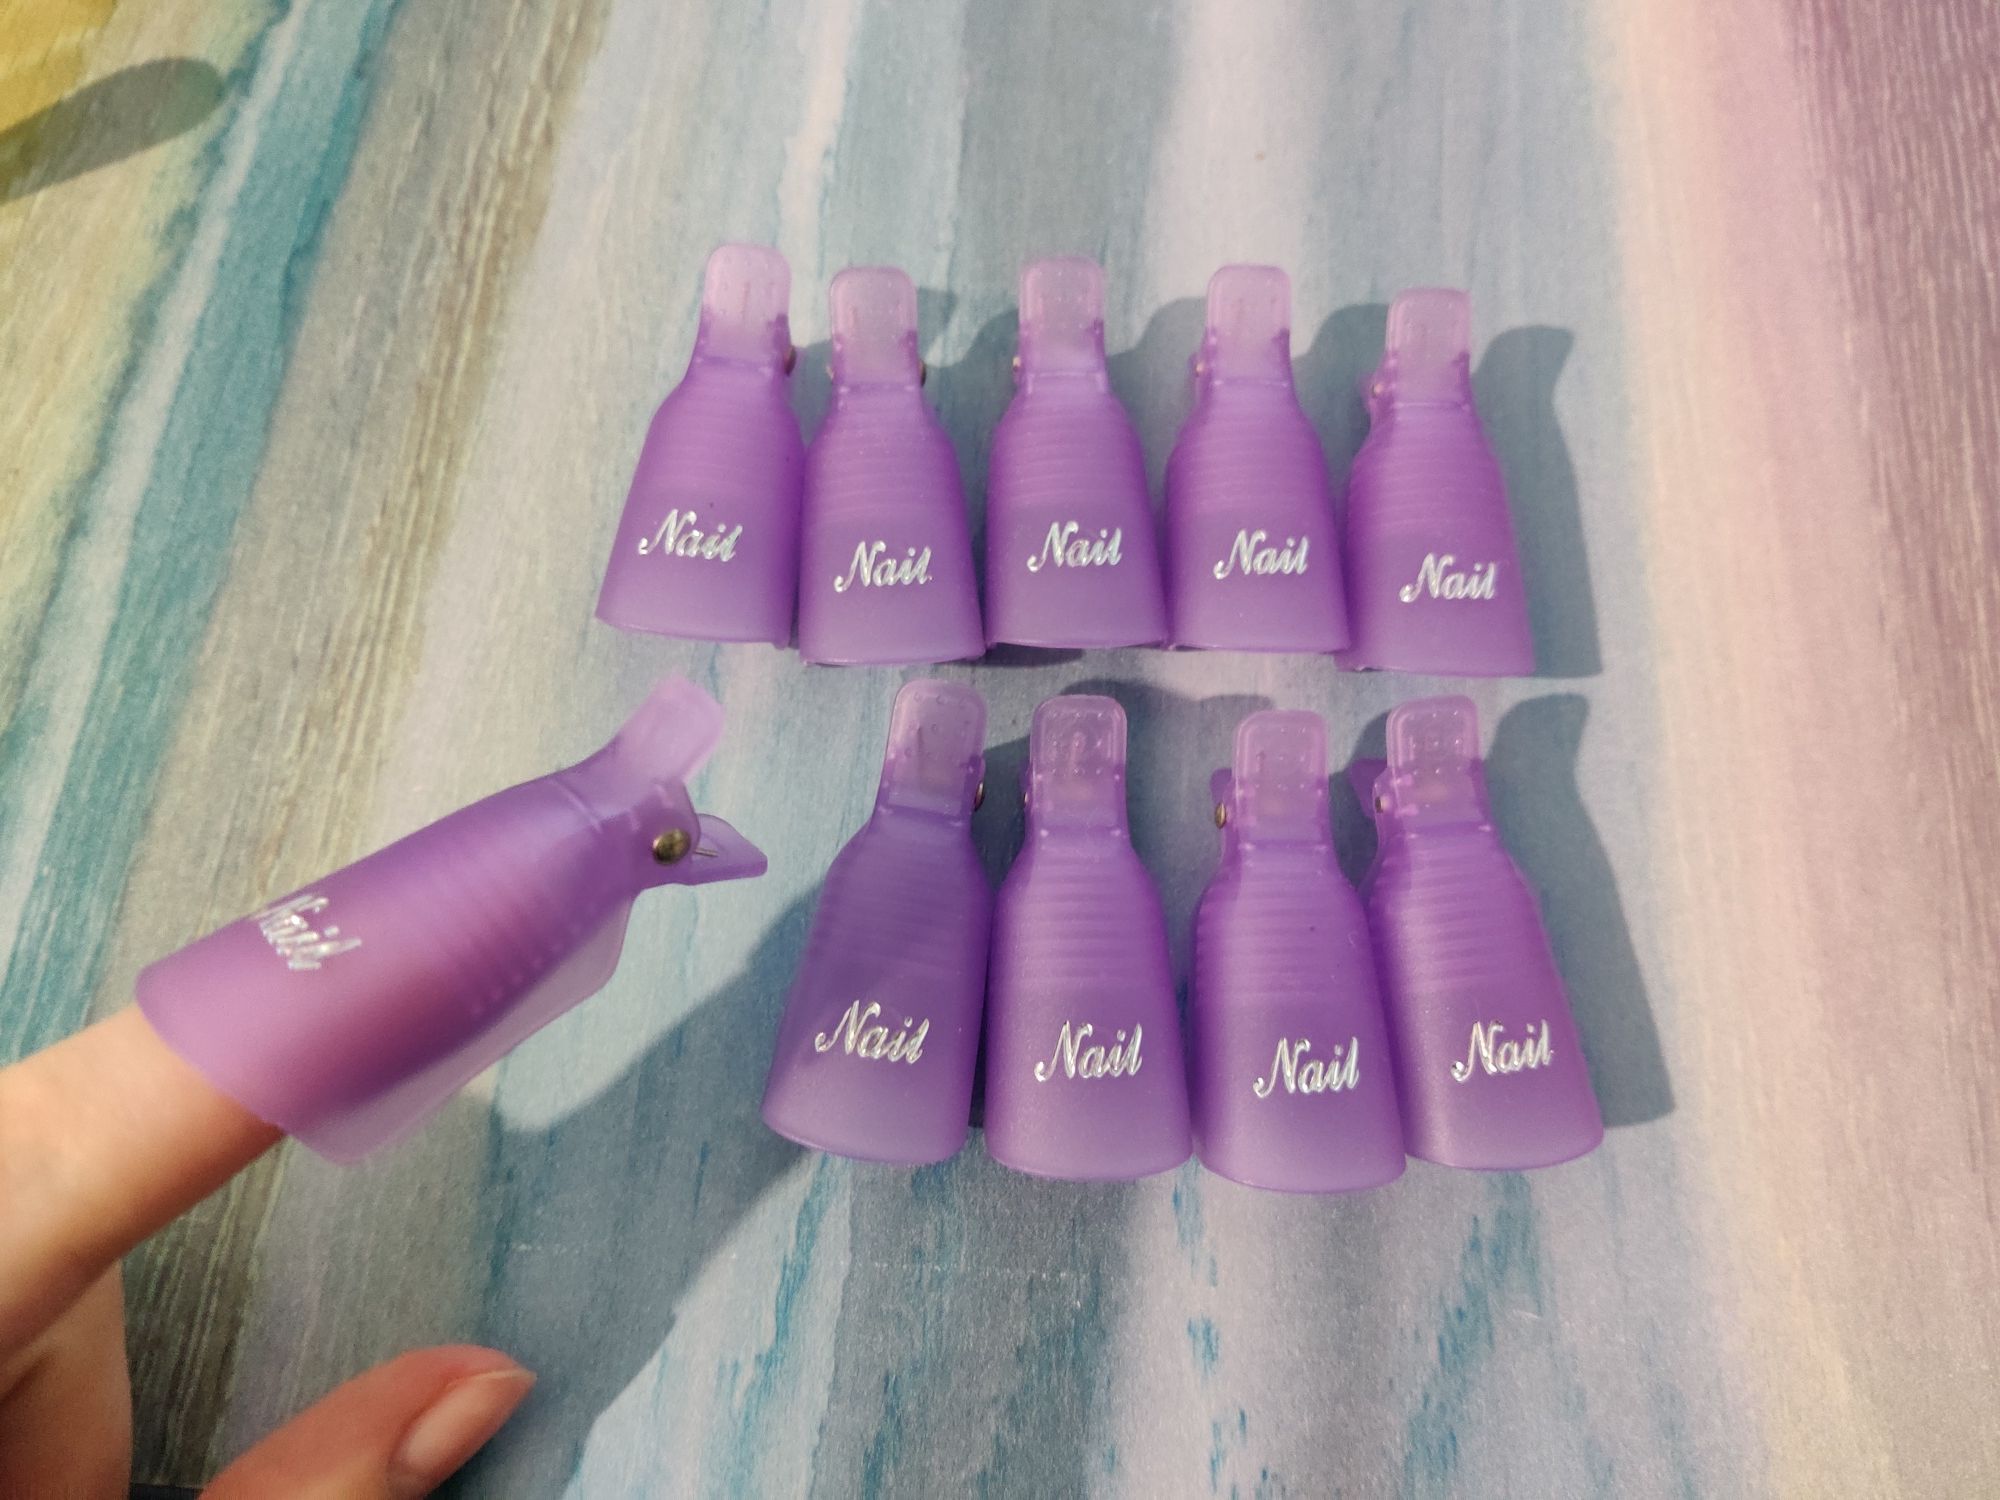 Кліпси пластикові багаторазові для зняття гель-лаку, фіолетові

- 10 ш